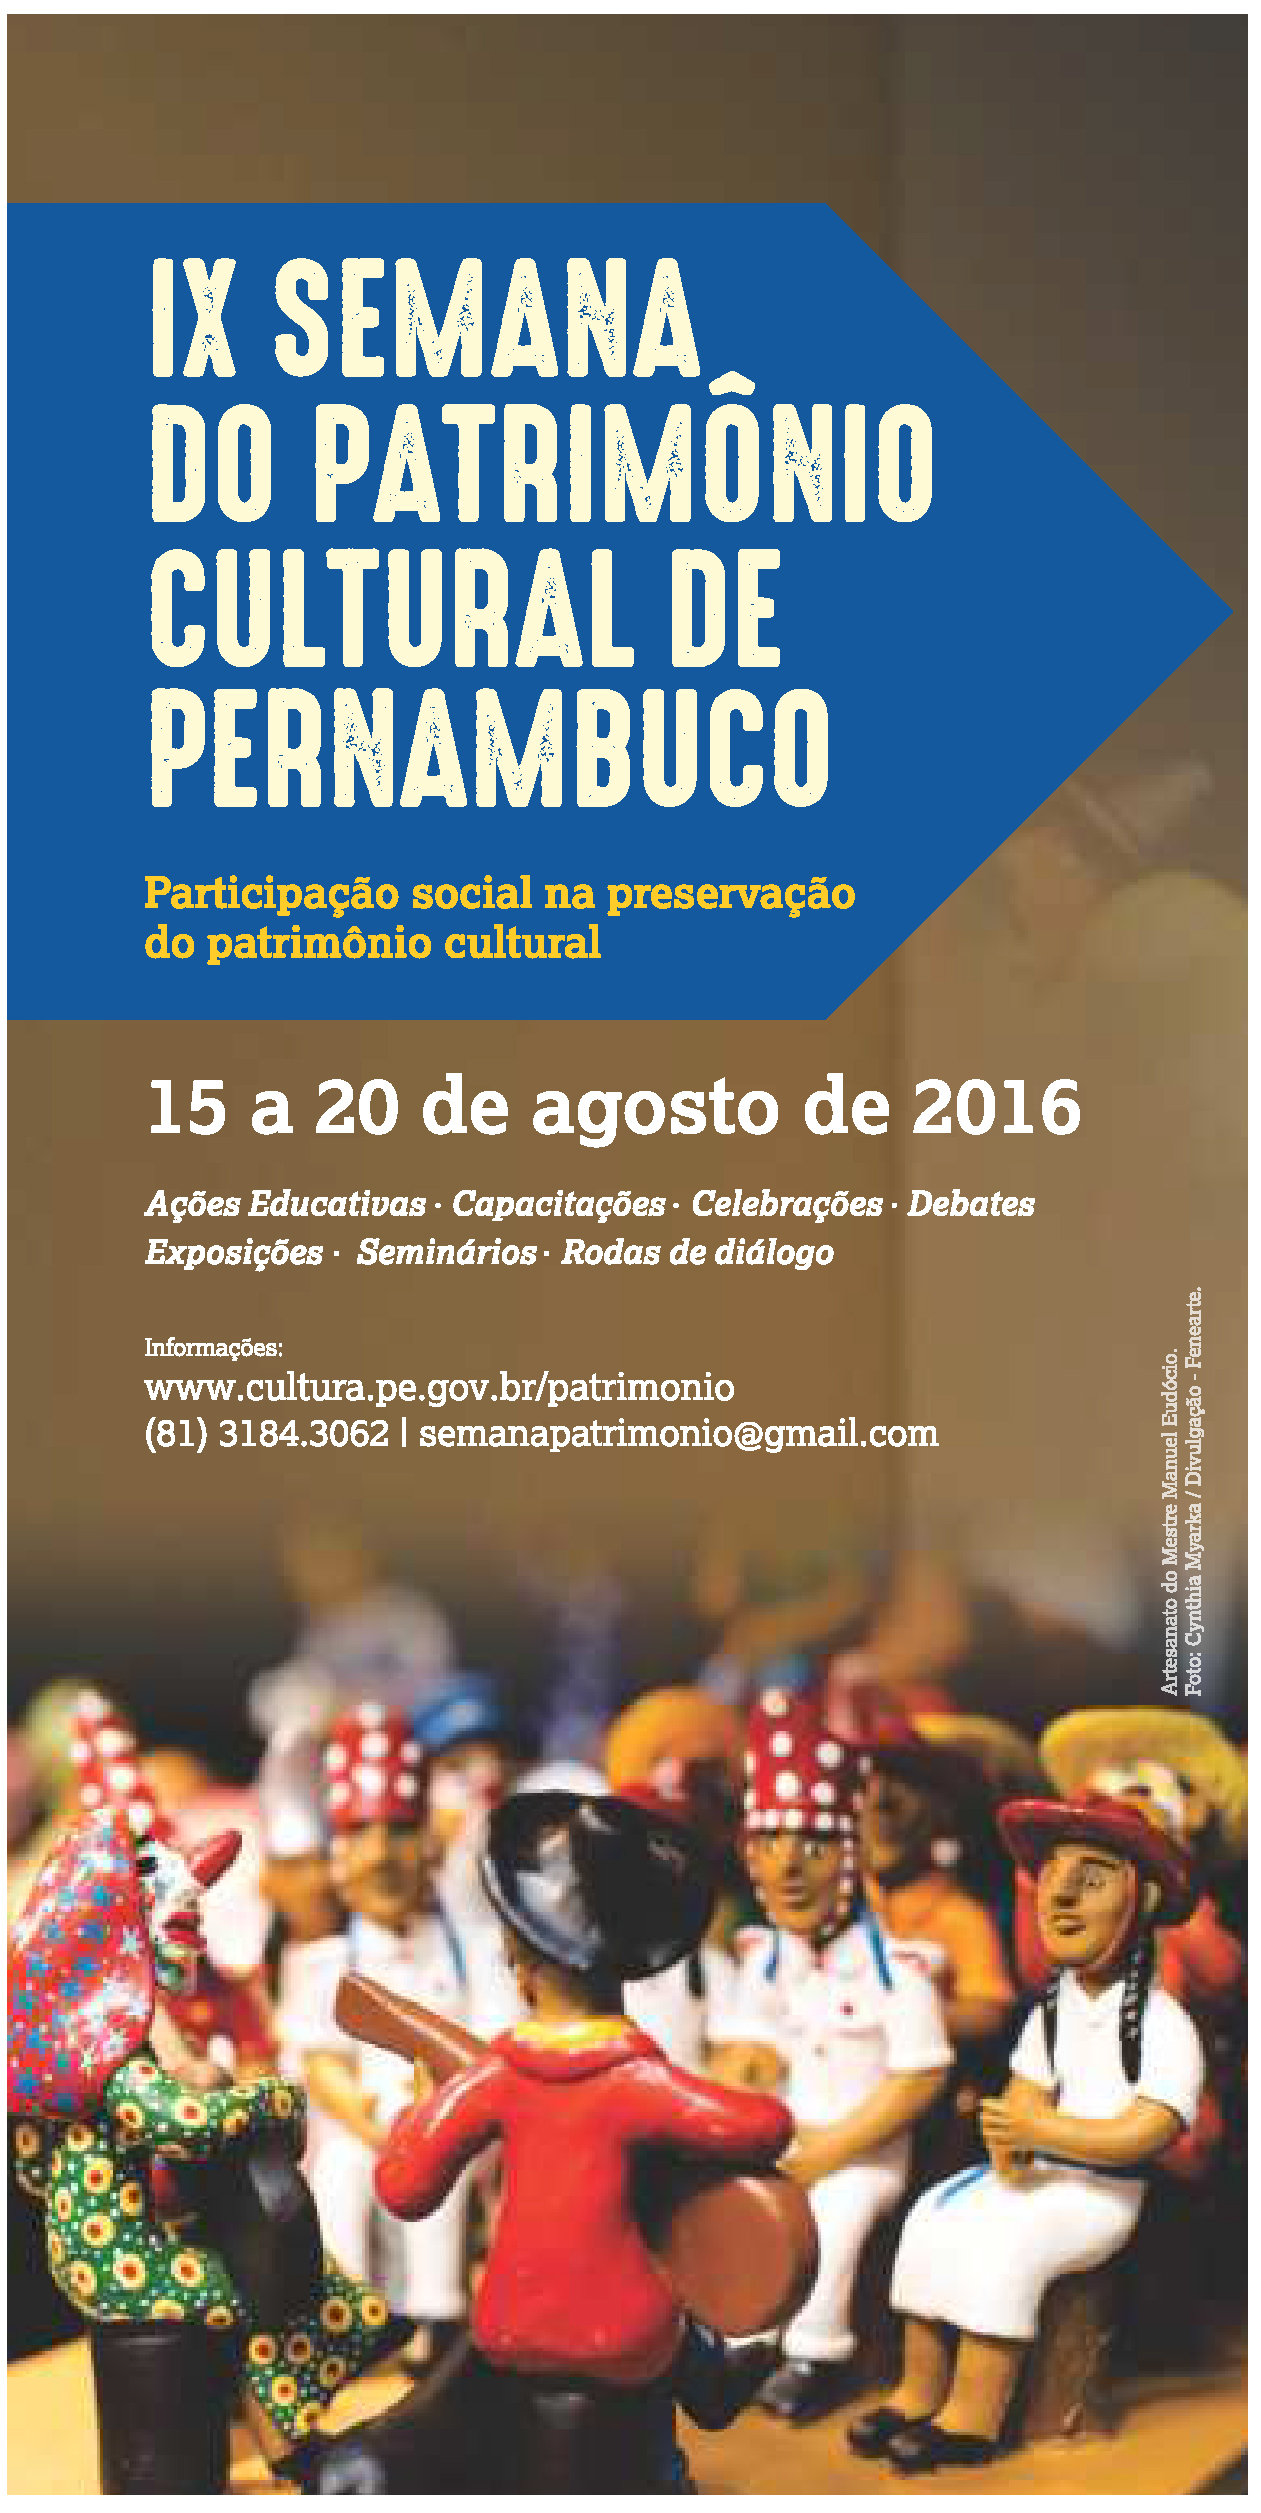 IX Semana do Patrimônio Cultural de Pernambuco